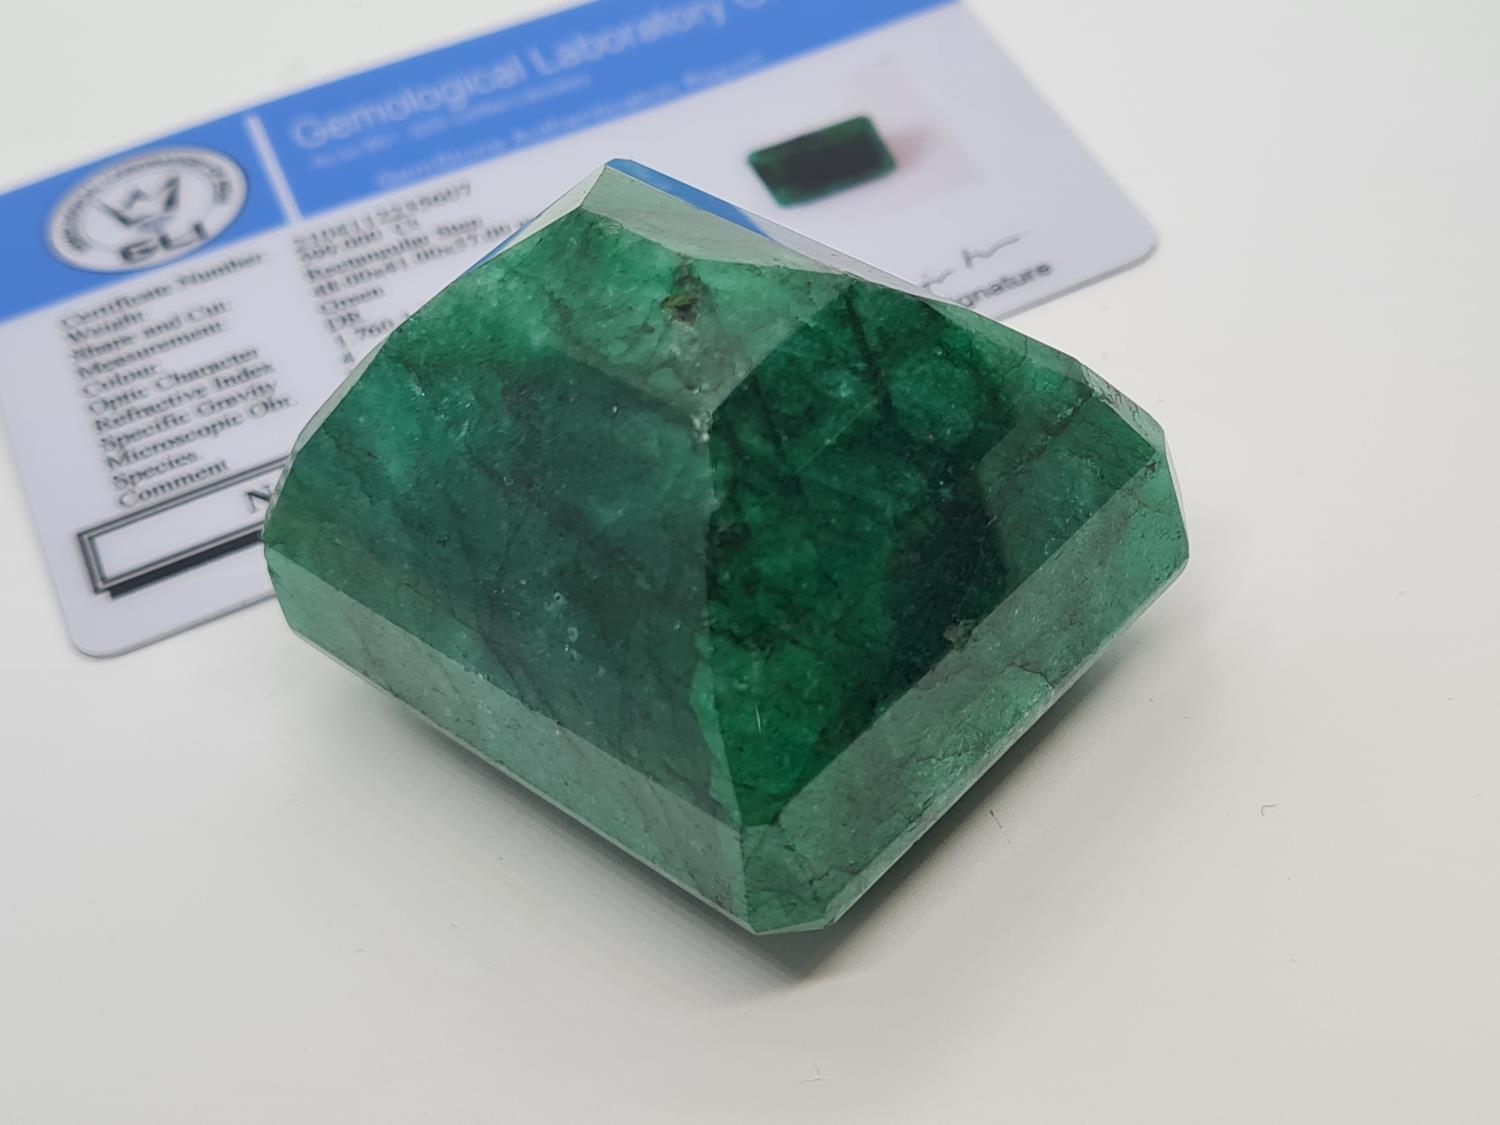 599ct Rectangular shaped emerald gemstone - Image 3 of 5